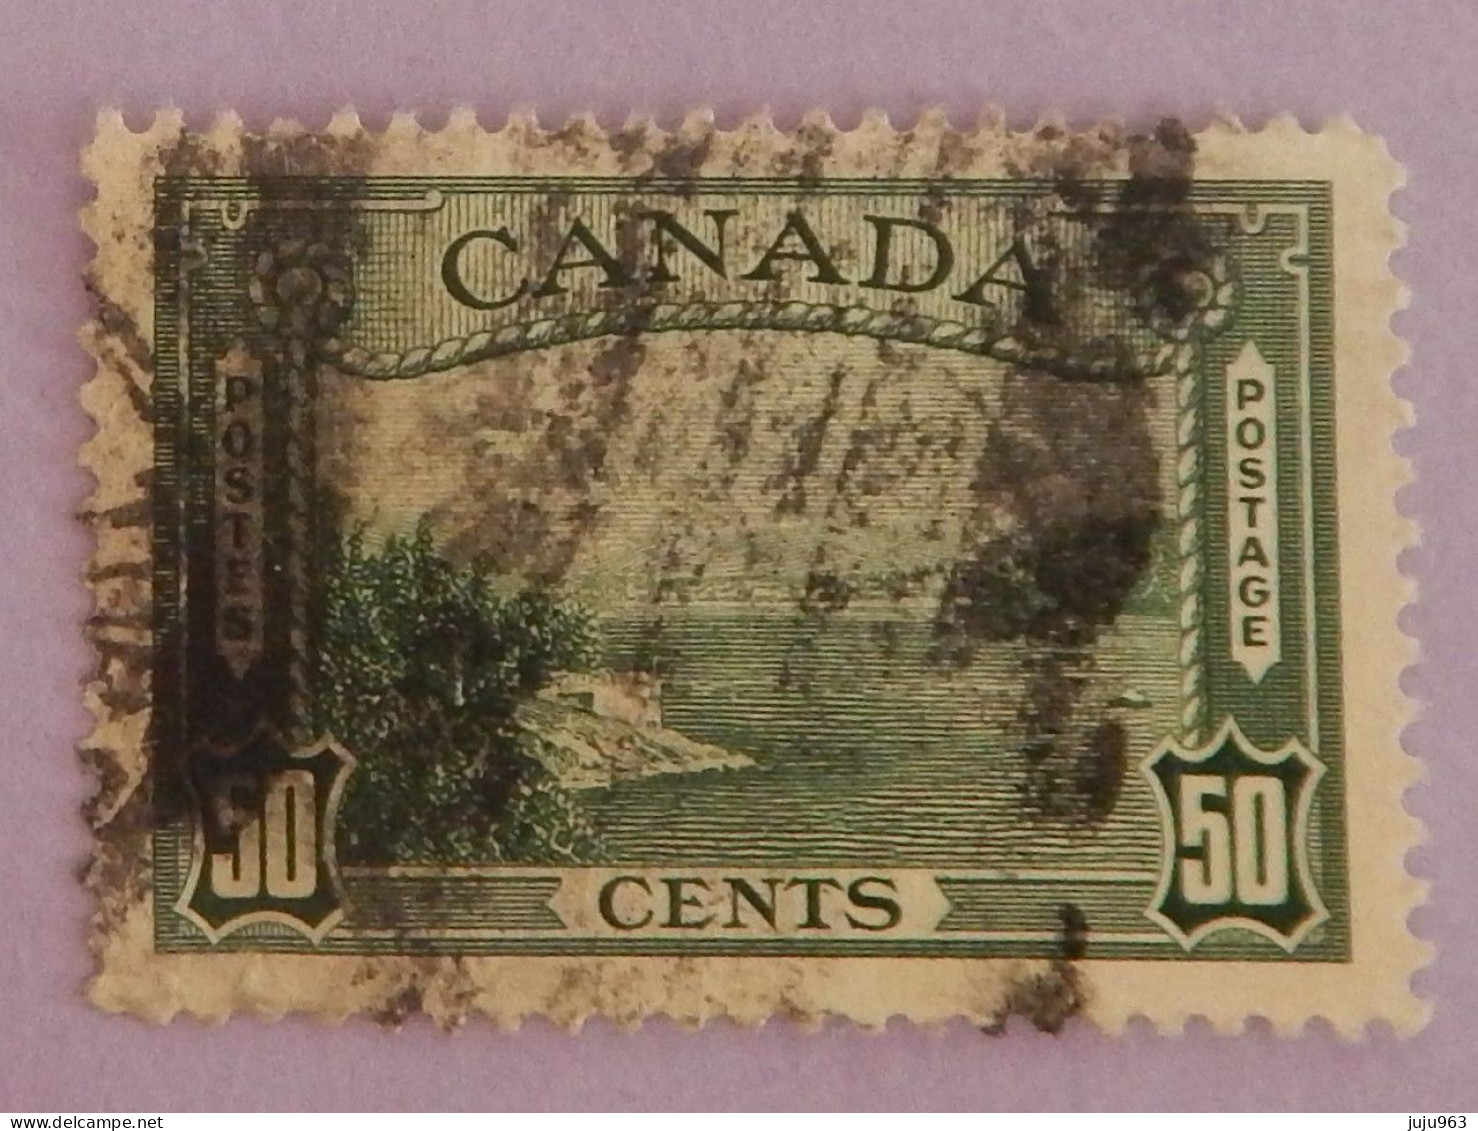 CANADA YT 200 OBLITERE "PORT DE VANCOUVER" ANNÉE 1938 - Oblitérés